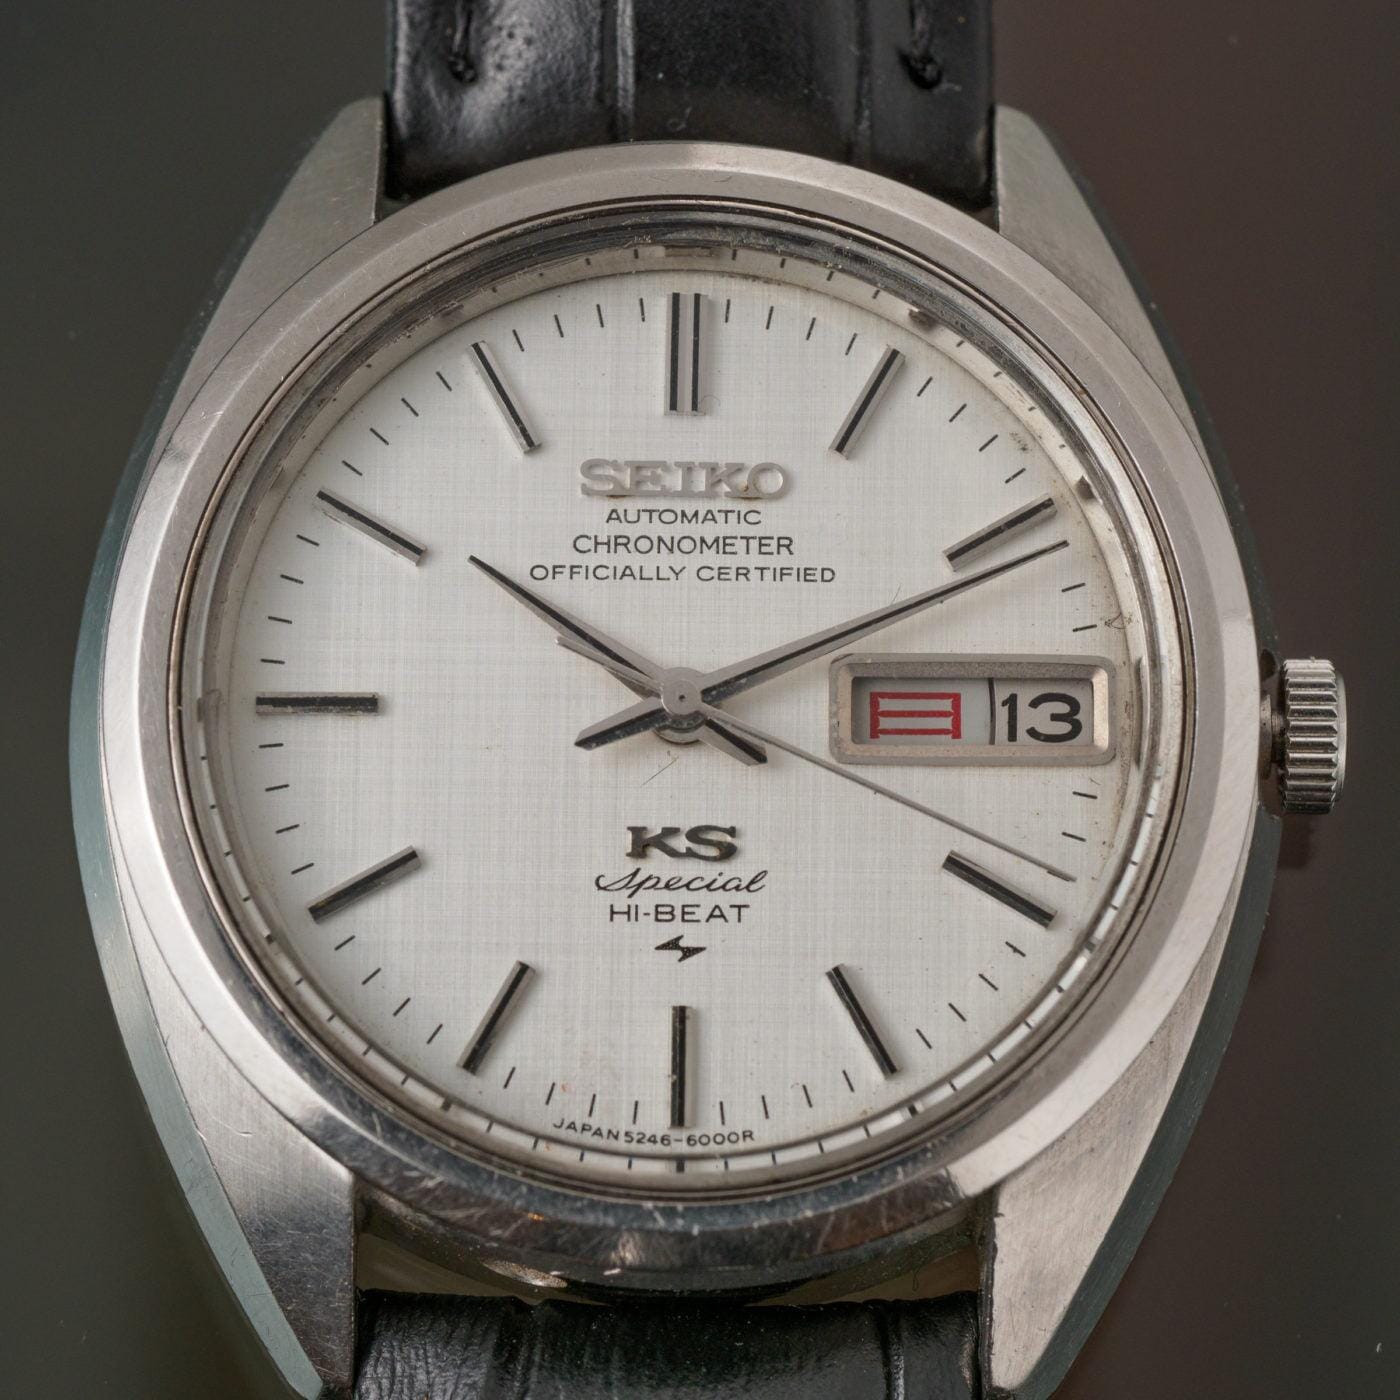 KING SEIKO Chronometer Special 5246-6000 - Arbitro